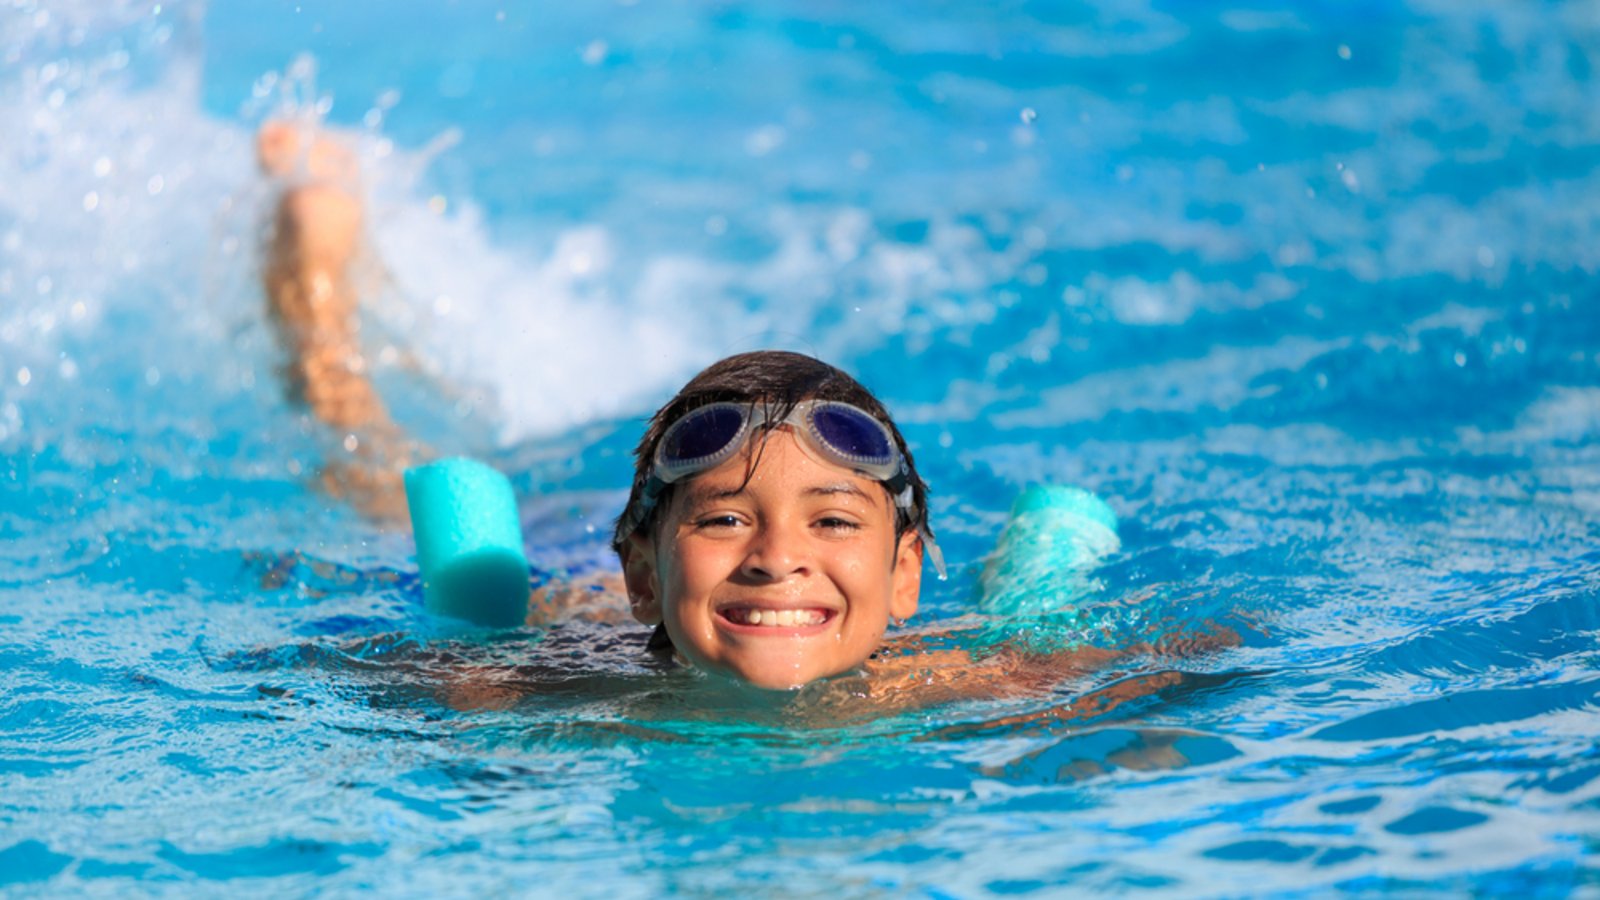 Ab wann können Kinder ohne Begleitung ins Schwimmbad?Foto: Cassiohabib / shutterstock.com